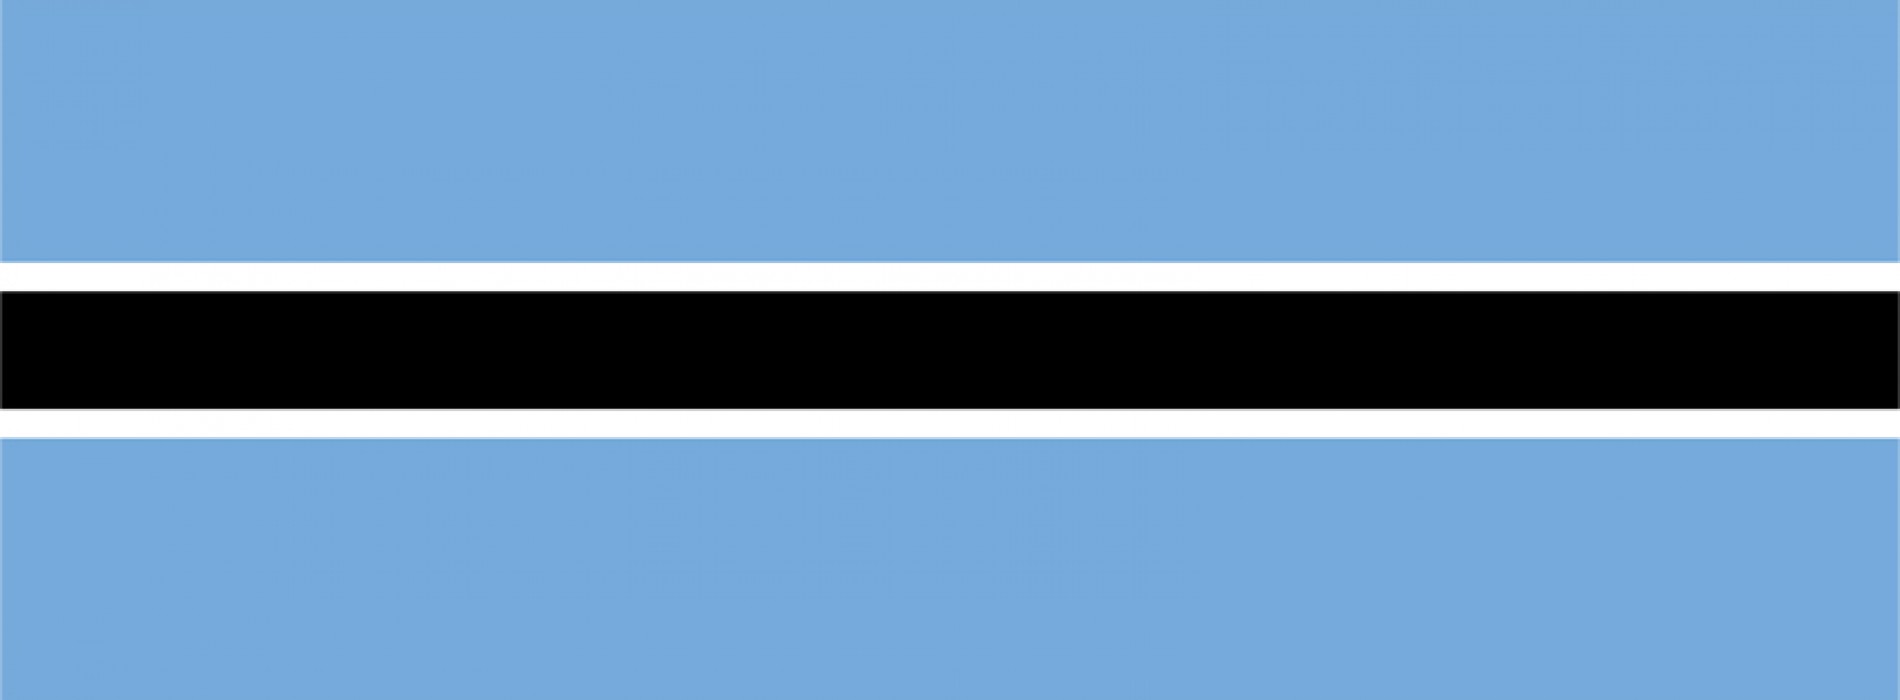 Botswana Visa